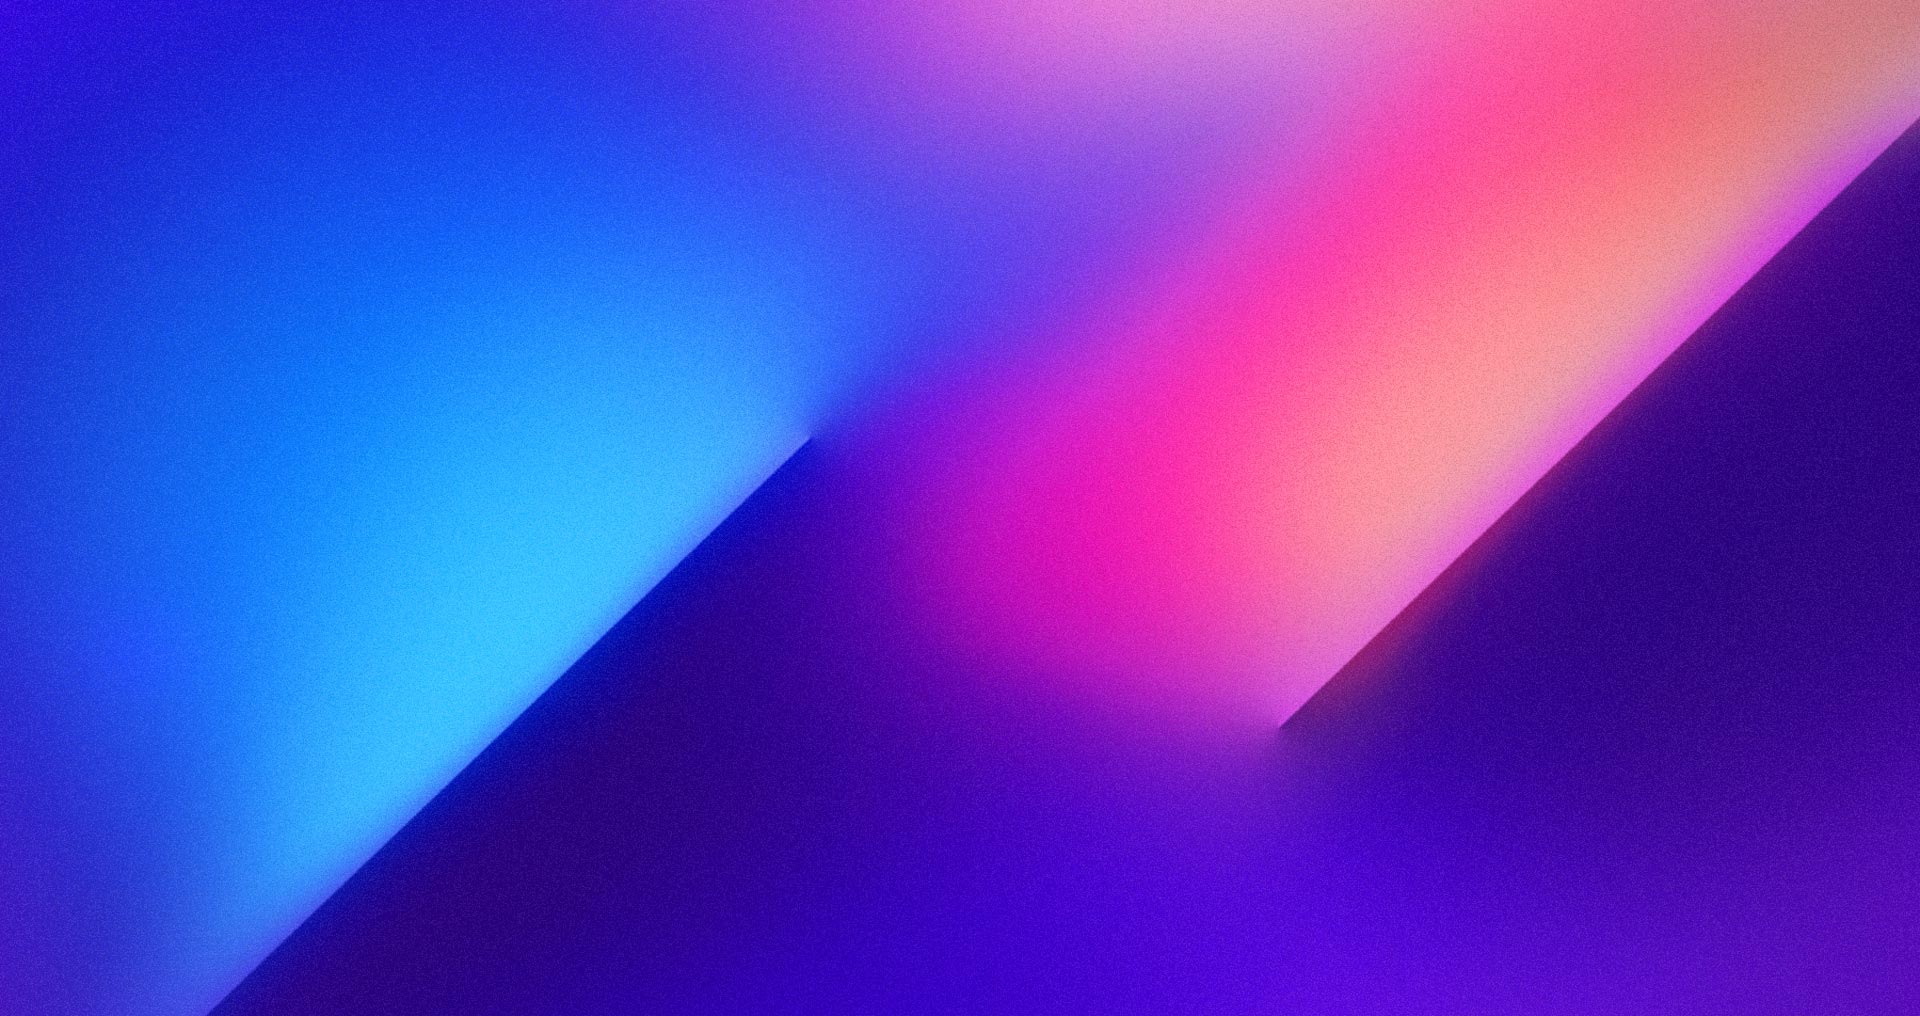 Khám phá ngay bộ sưu tập ấn tượng về hình nền gradient-background-02 của SAPIENS Network. Đây là những tác phẩm độc đáo, sáng tạo và đẹp mê hồn kết hợp giữa màu sắc và hình dạng. Chắc chắn sẽ khiến bạn phải trầm trồ khen ngợi!